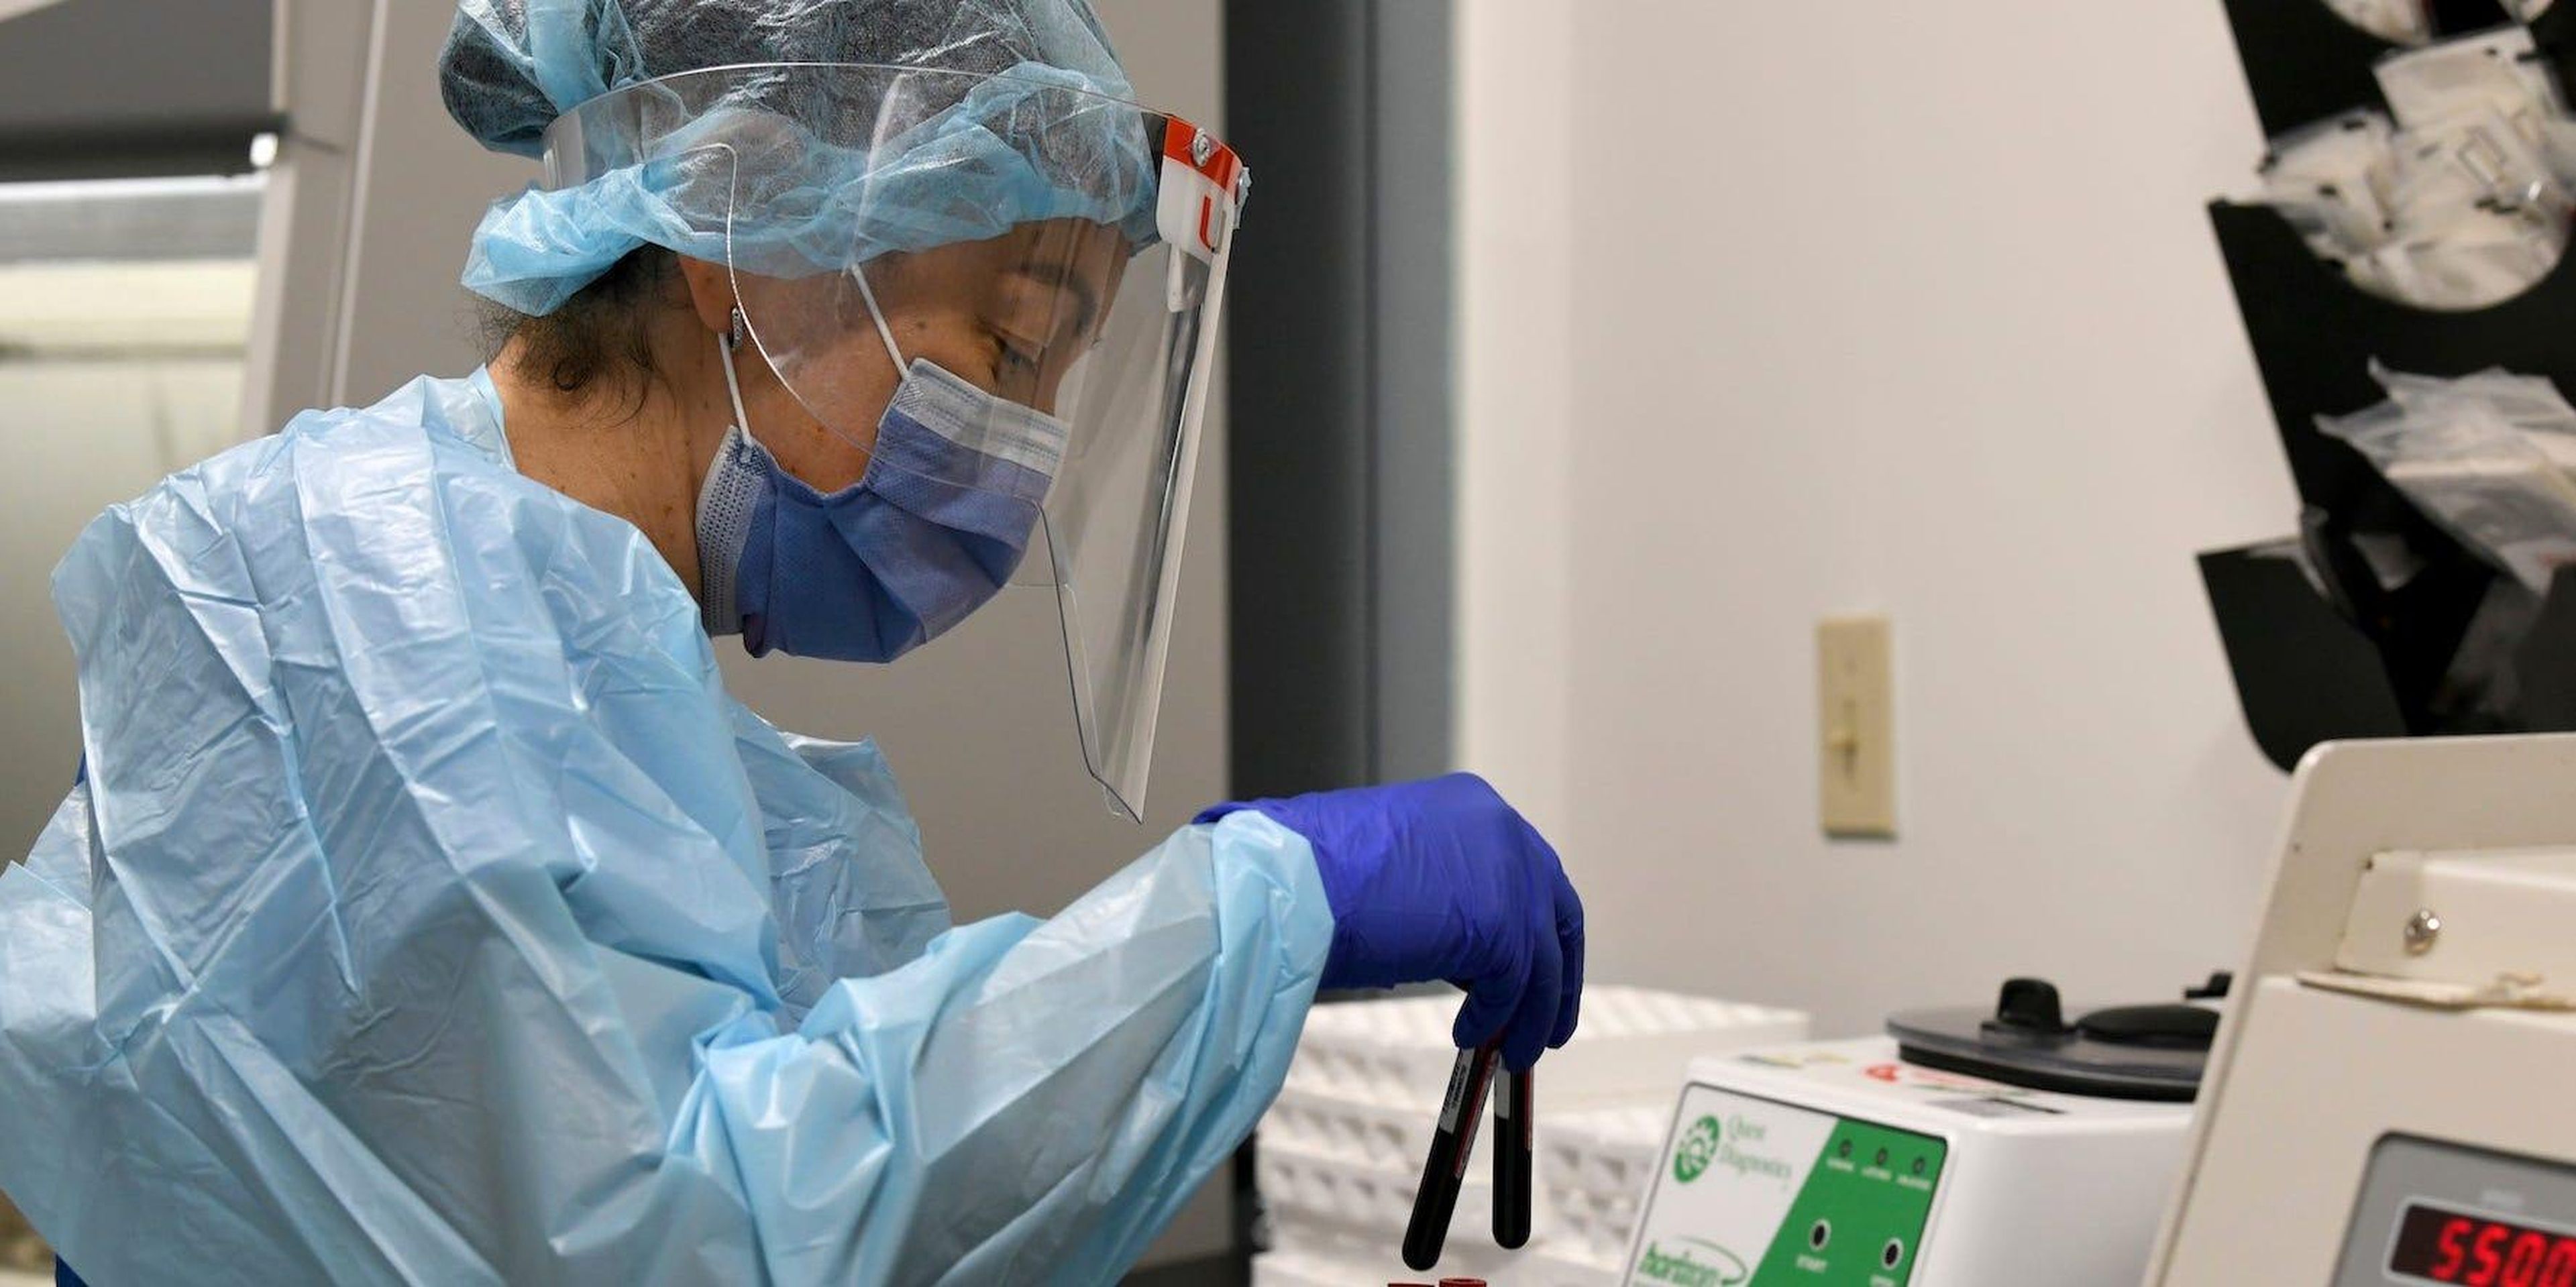 El técnico de laboratorio Sendy Puerto procesa muestras de sangre de los participantes del estudio de ensayos clínicos de la vacuna contra el coronavirus de Moderna el 2 de septiembre de 2020 en Miami, Florida.